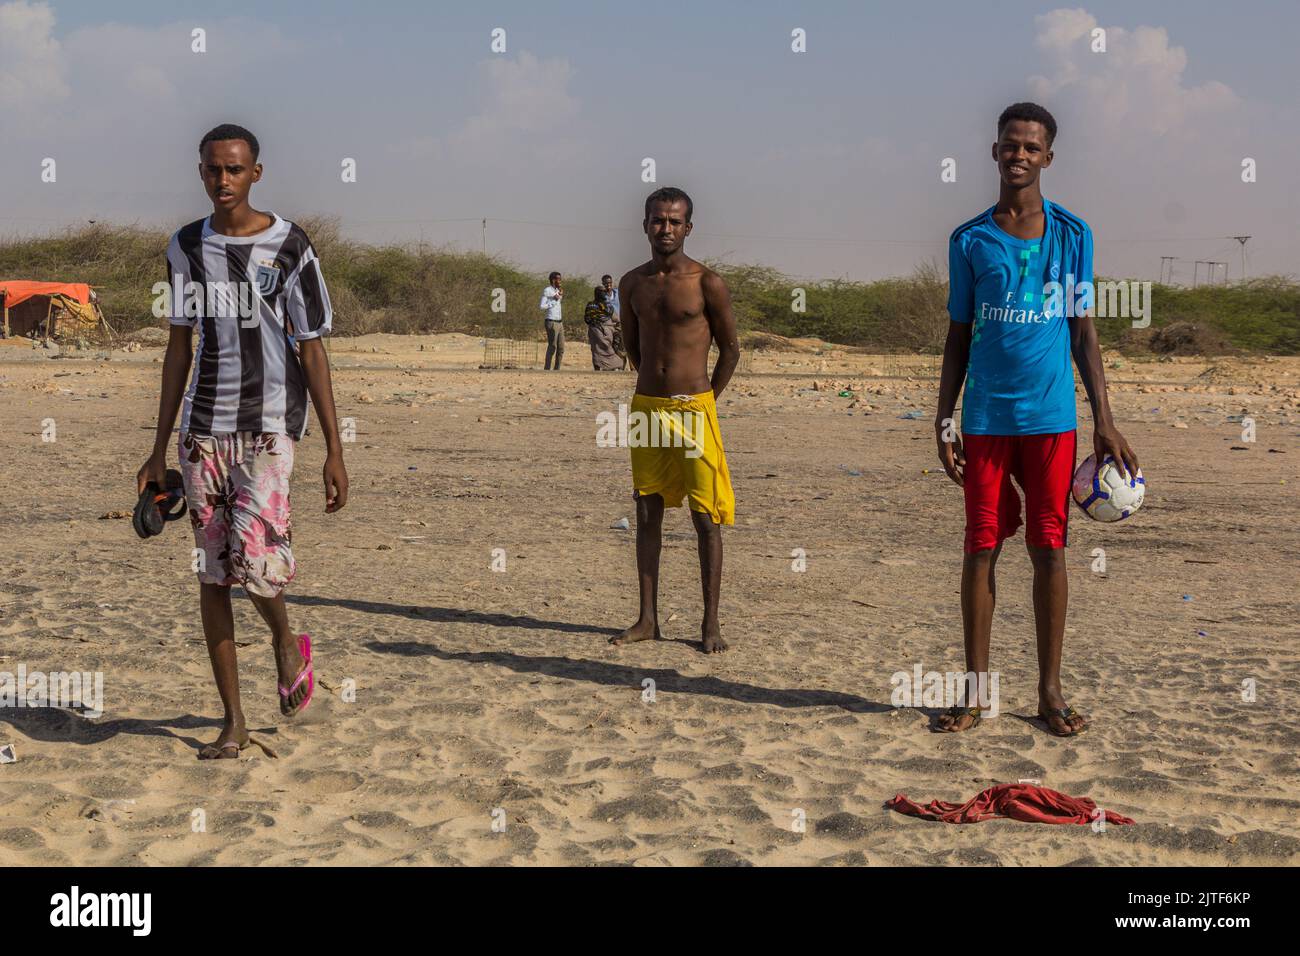 BERBERA, SOMALILANDIA - 13 DE ABRIL de 2019: Jóvenes en una playa cerca de Berbera, Somalilandia Foto de stock